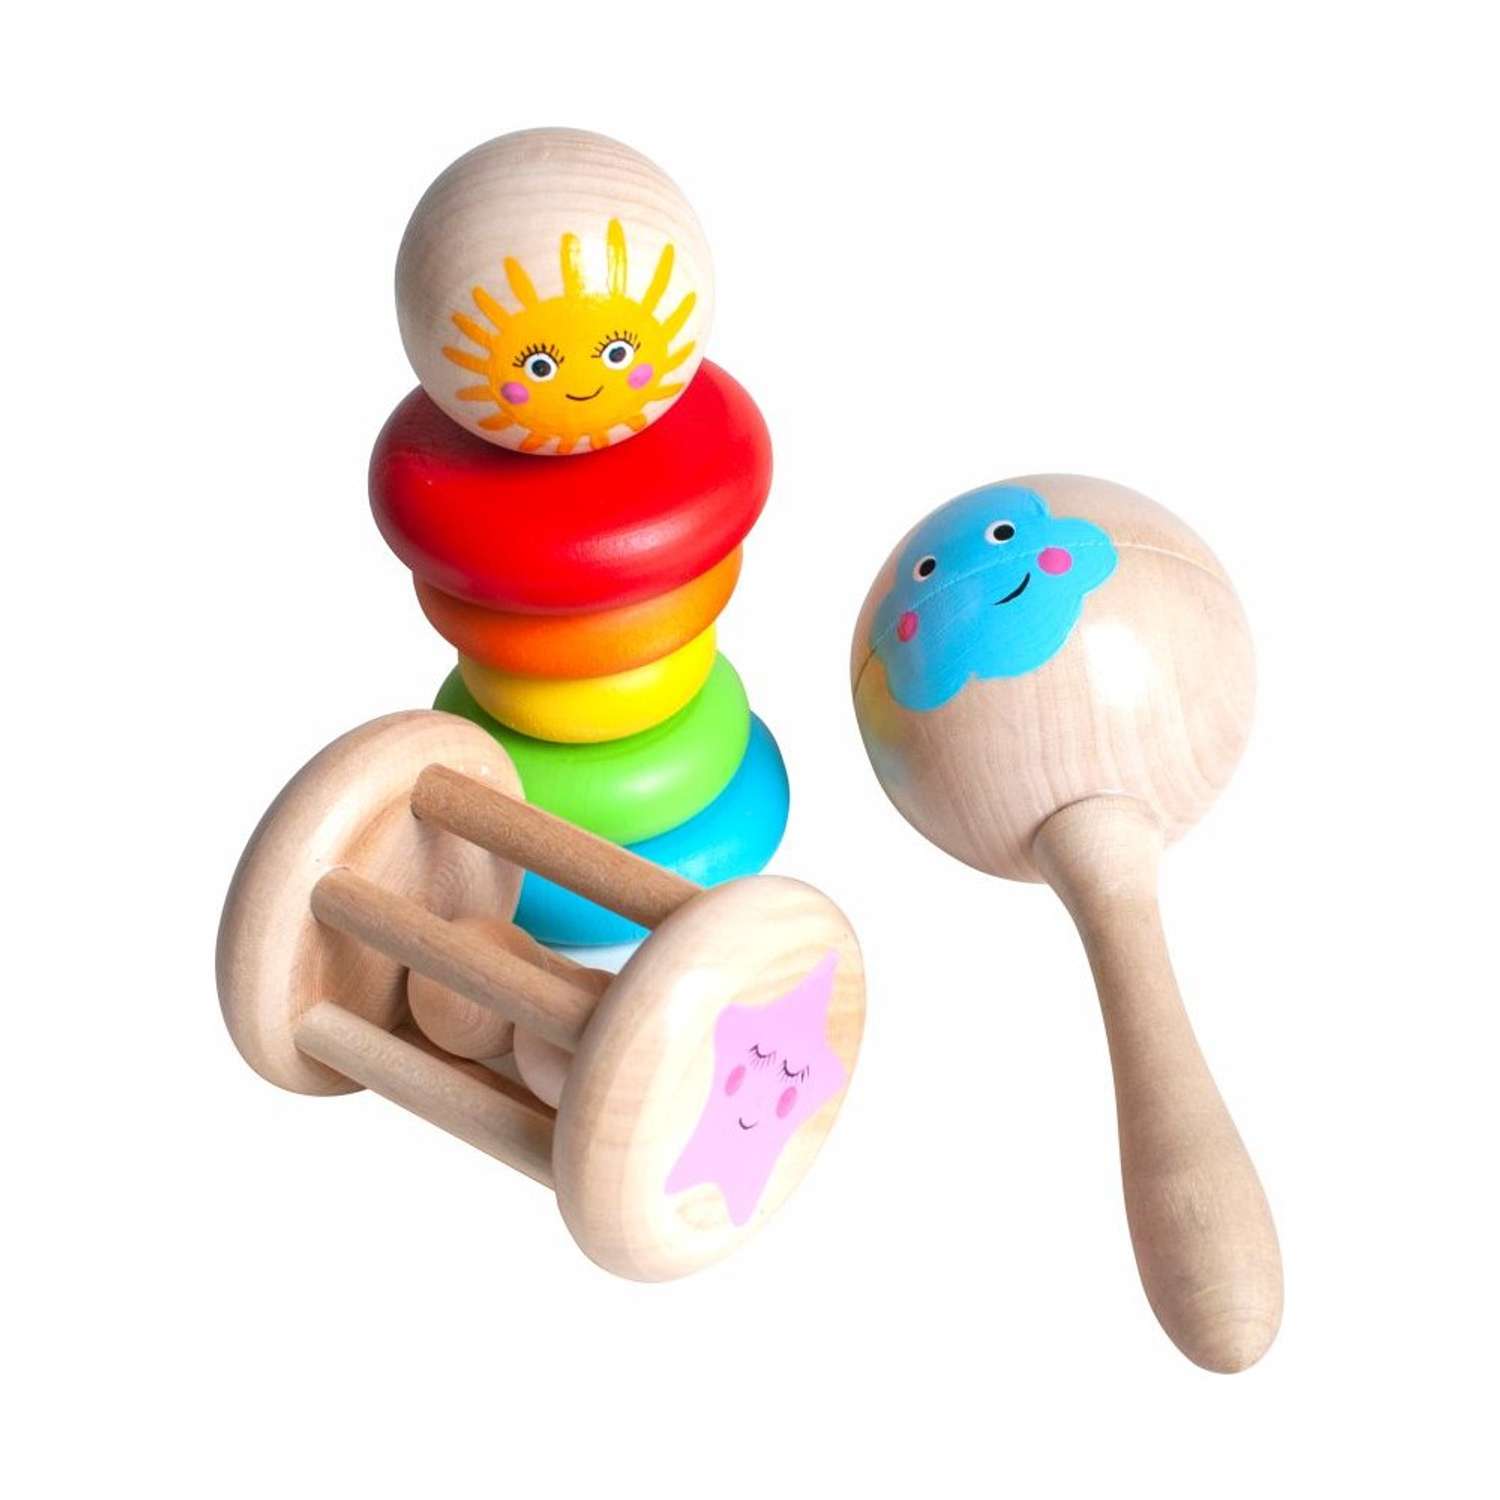 Набор погремушек Ulanik Моё Солнышко игрушки для самых маленьких 3 шт - фото 1